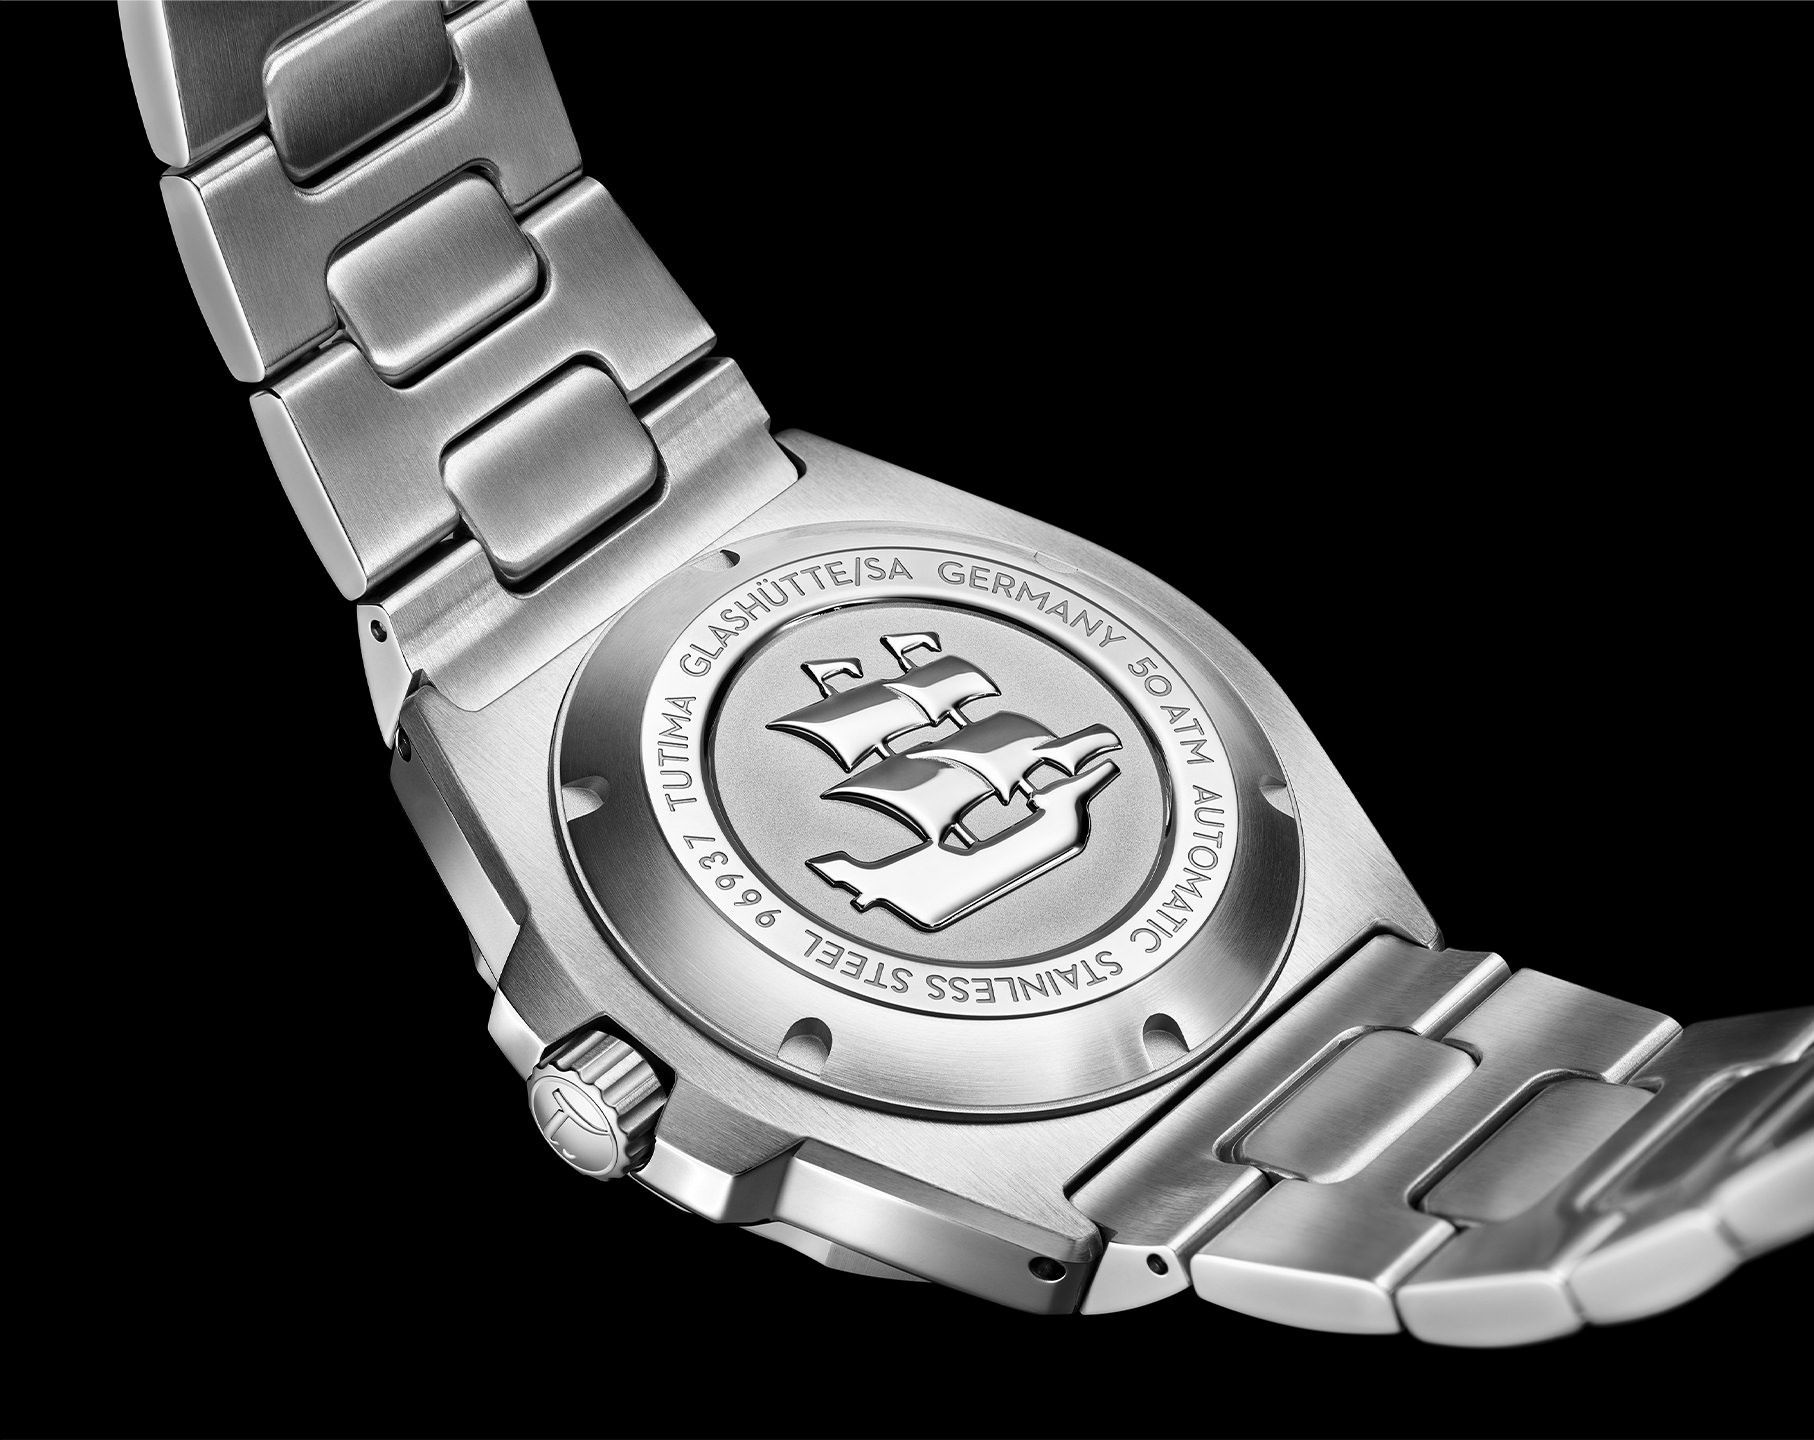 Tutima Glashütte Seven Seas S 40 mm Watch in Blue Dial For Men - 3